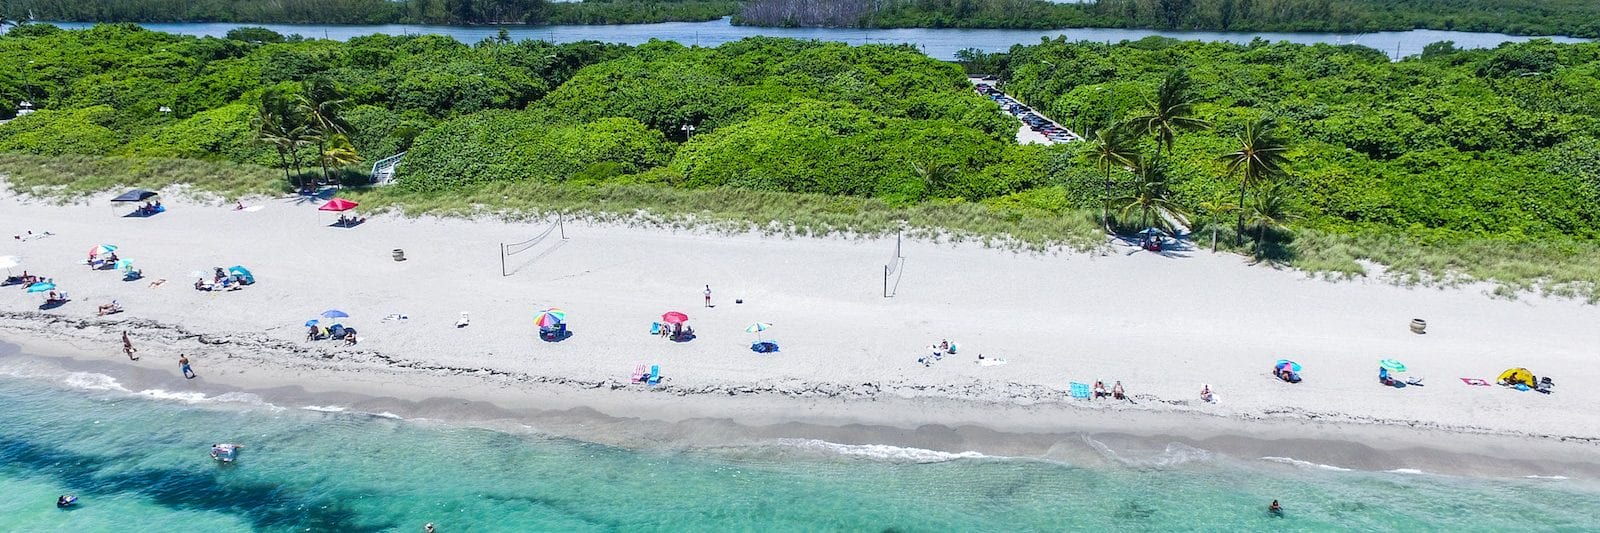 Dania Beach in Fort Lauderdale, Florida